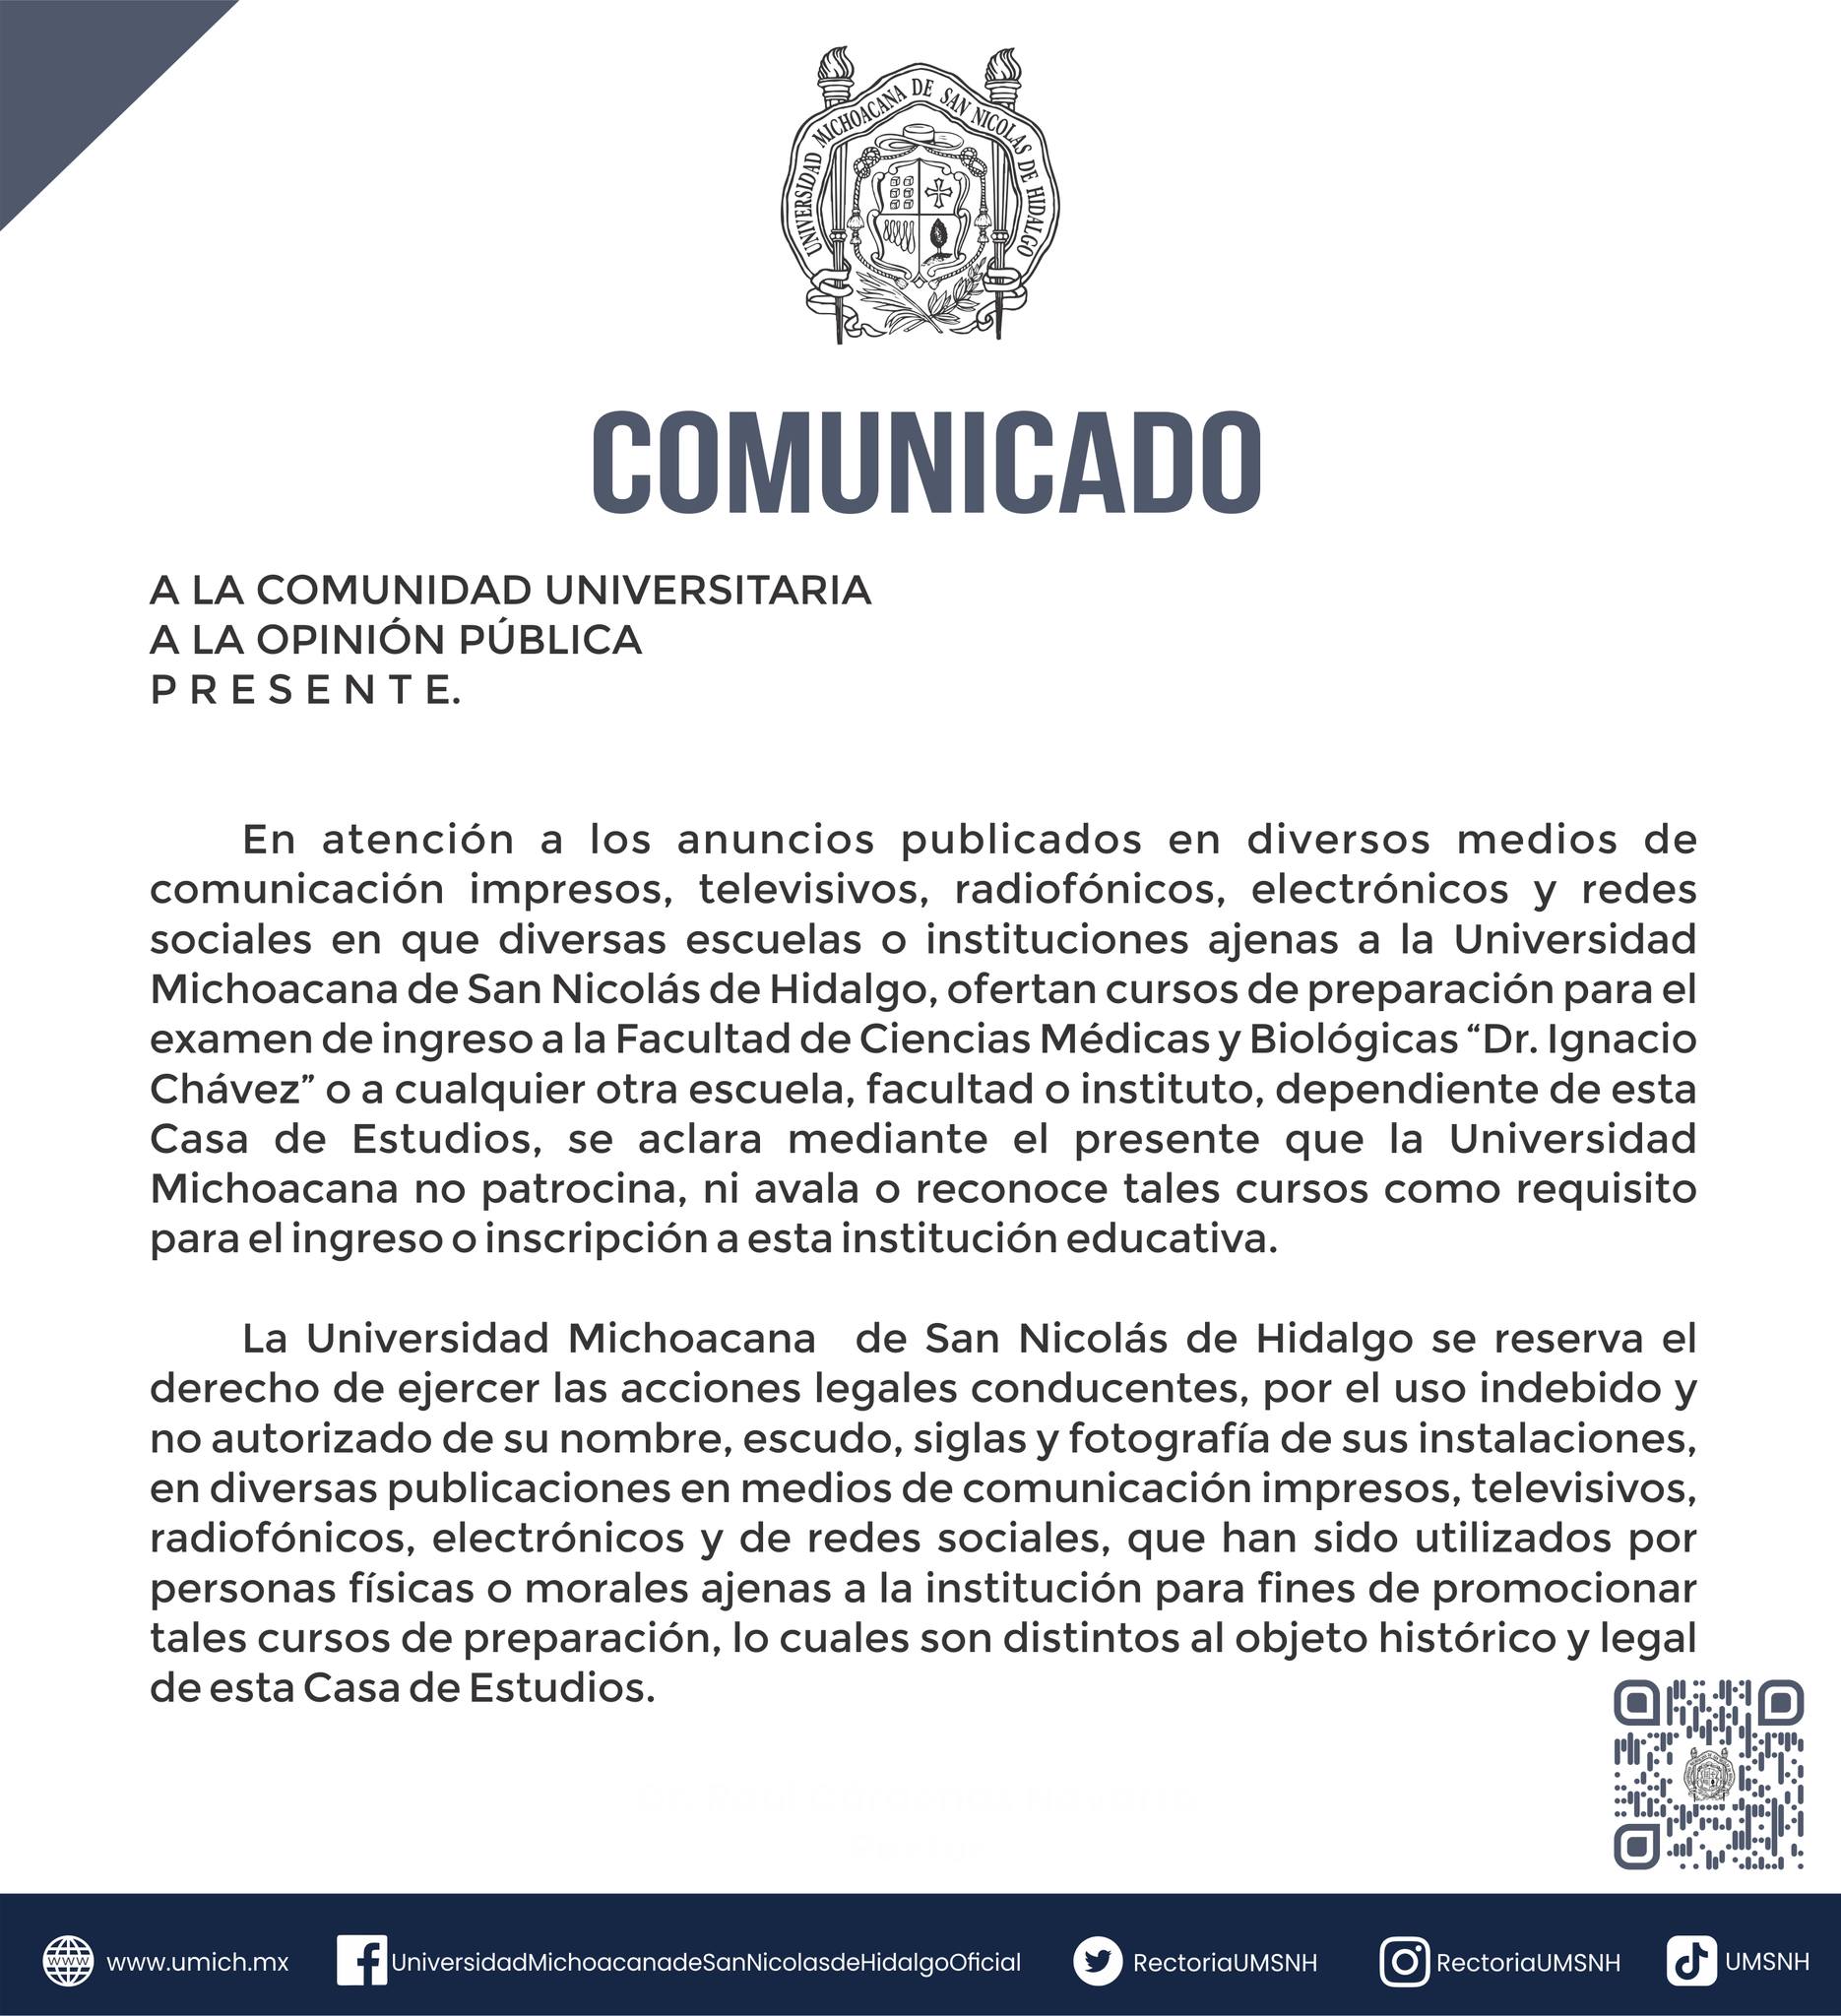 El 6 de julio la Universidad Michoacana de San Nicolás de Hidalgo, mediante comunicado  institucional advertía a empresas particulares no hacer uso de la imagen de la UMSNH